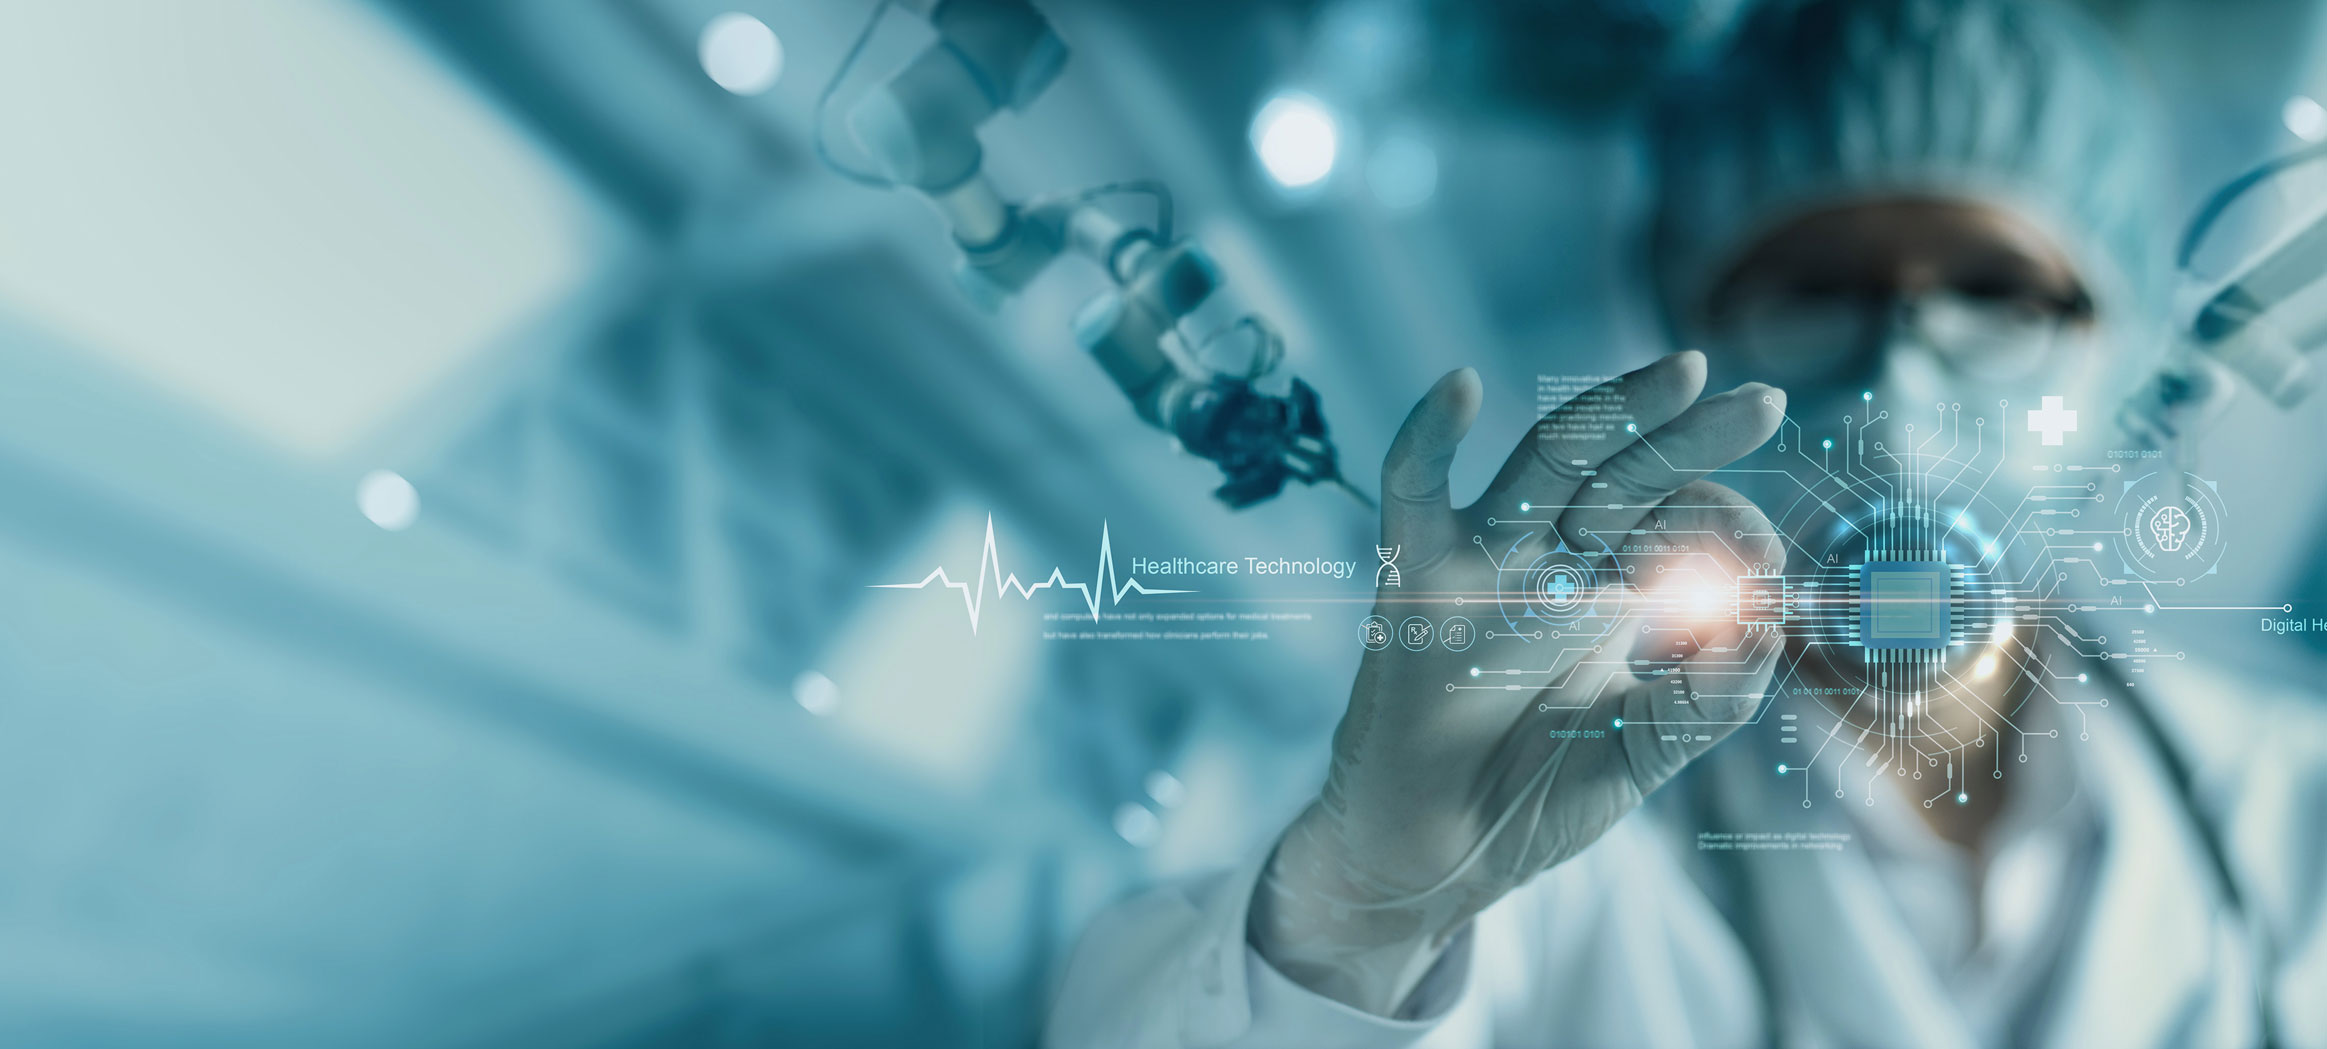 Technologie im Gesundheitswesen: der Fortschritt künstlicher Intelligenz in der Medizin